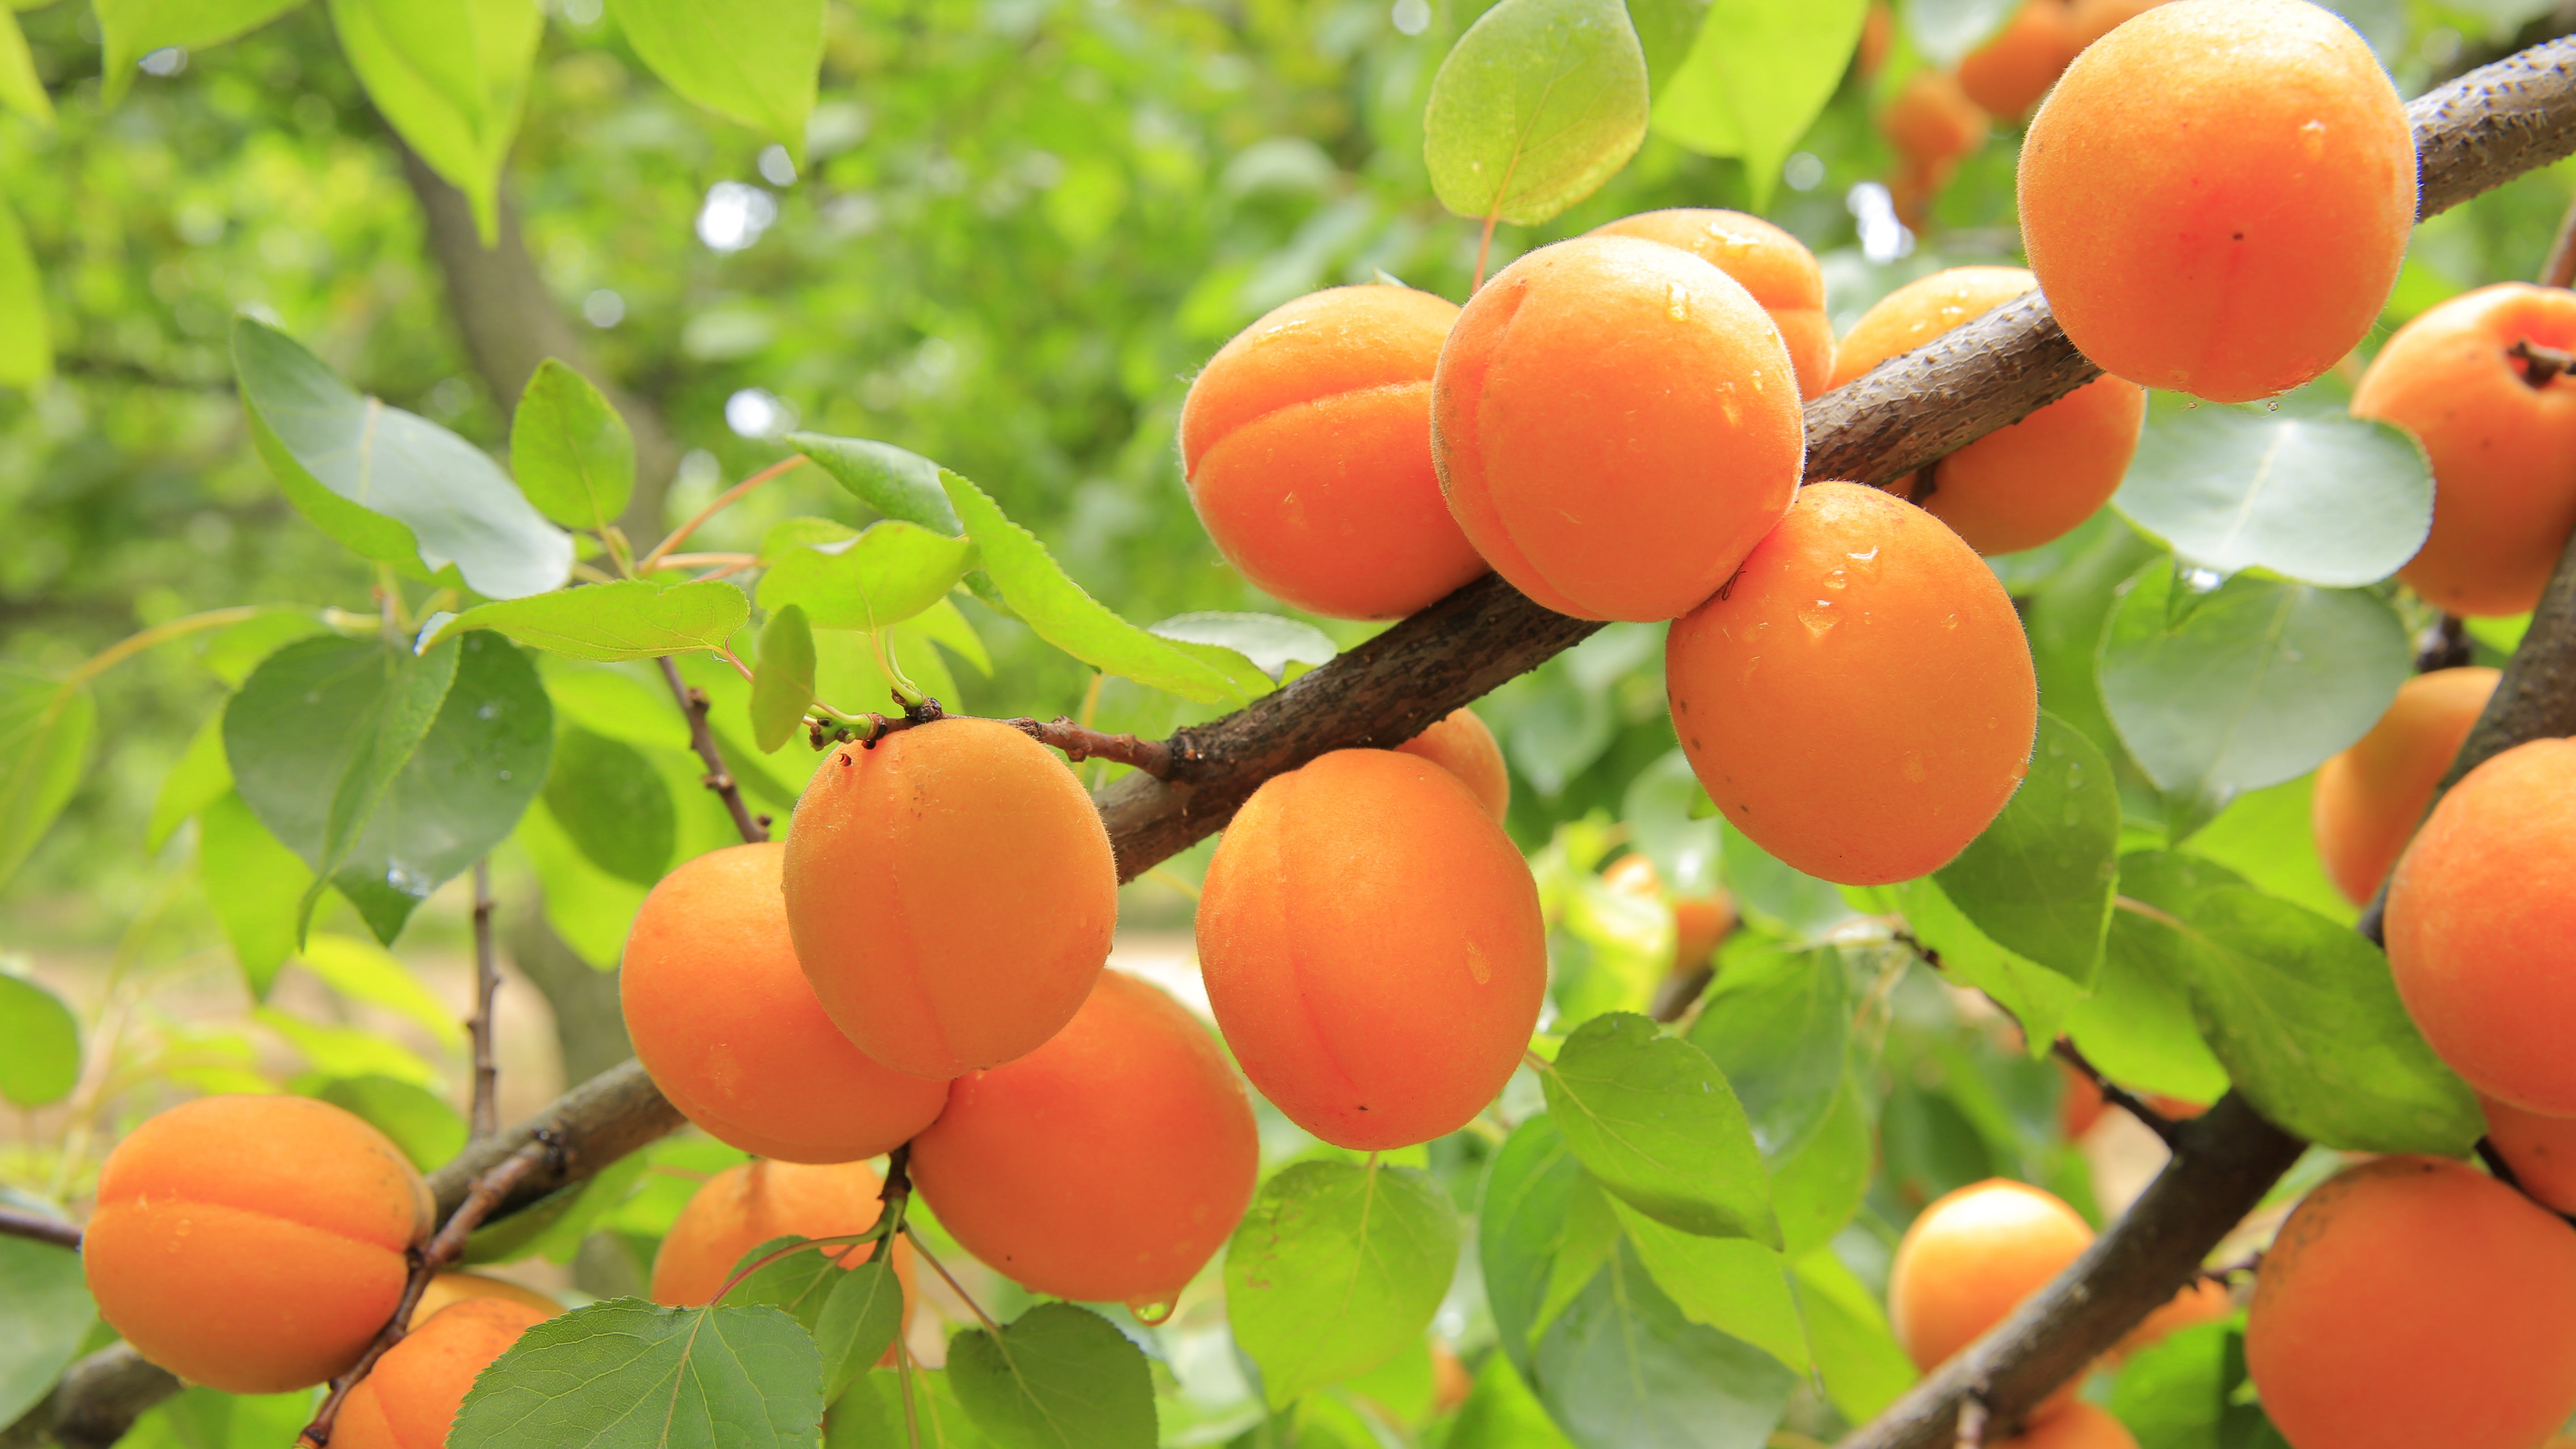 一根树枝上挂着成熟的橙色杏子